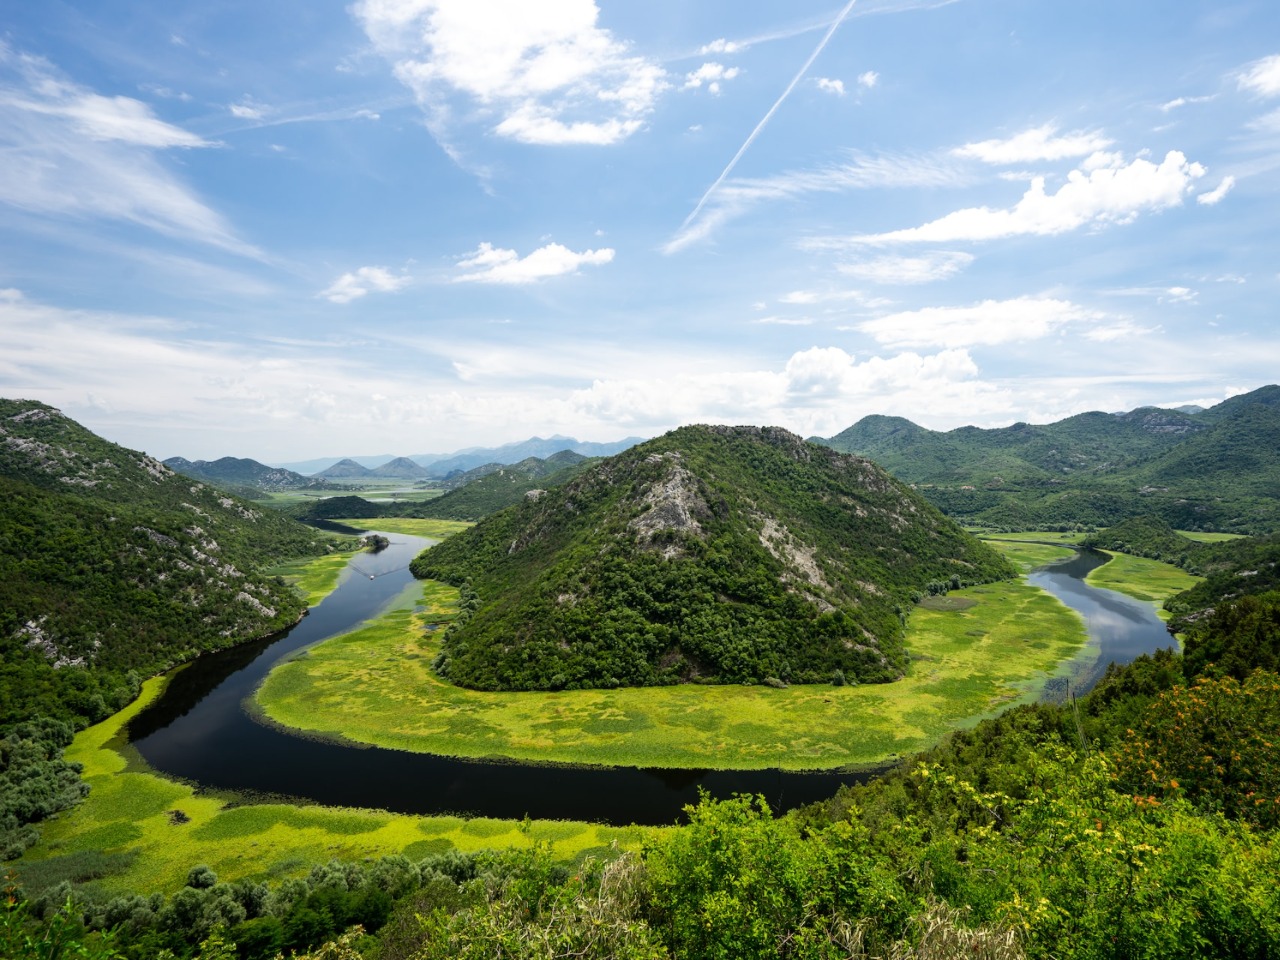 Река Црноевича и Скадарское озеро  | Цена 190€, отзывы, описание экскурсии